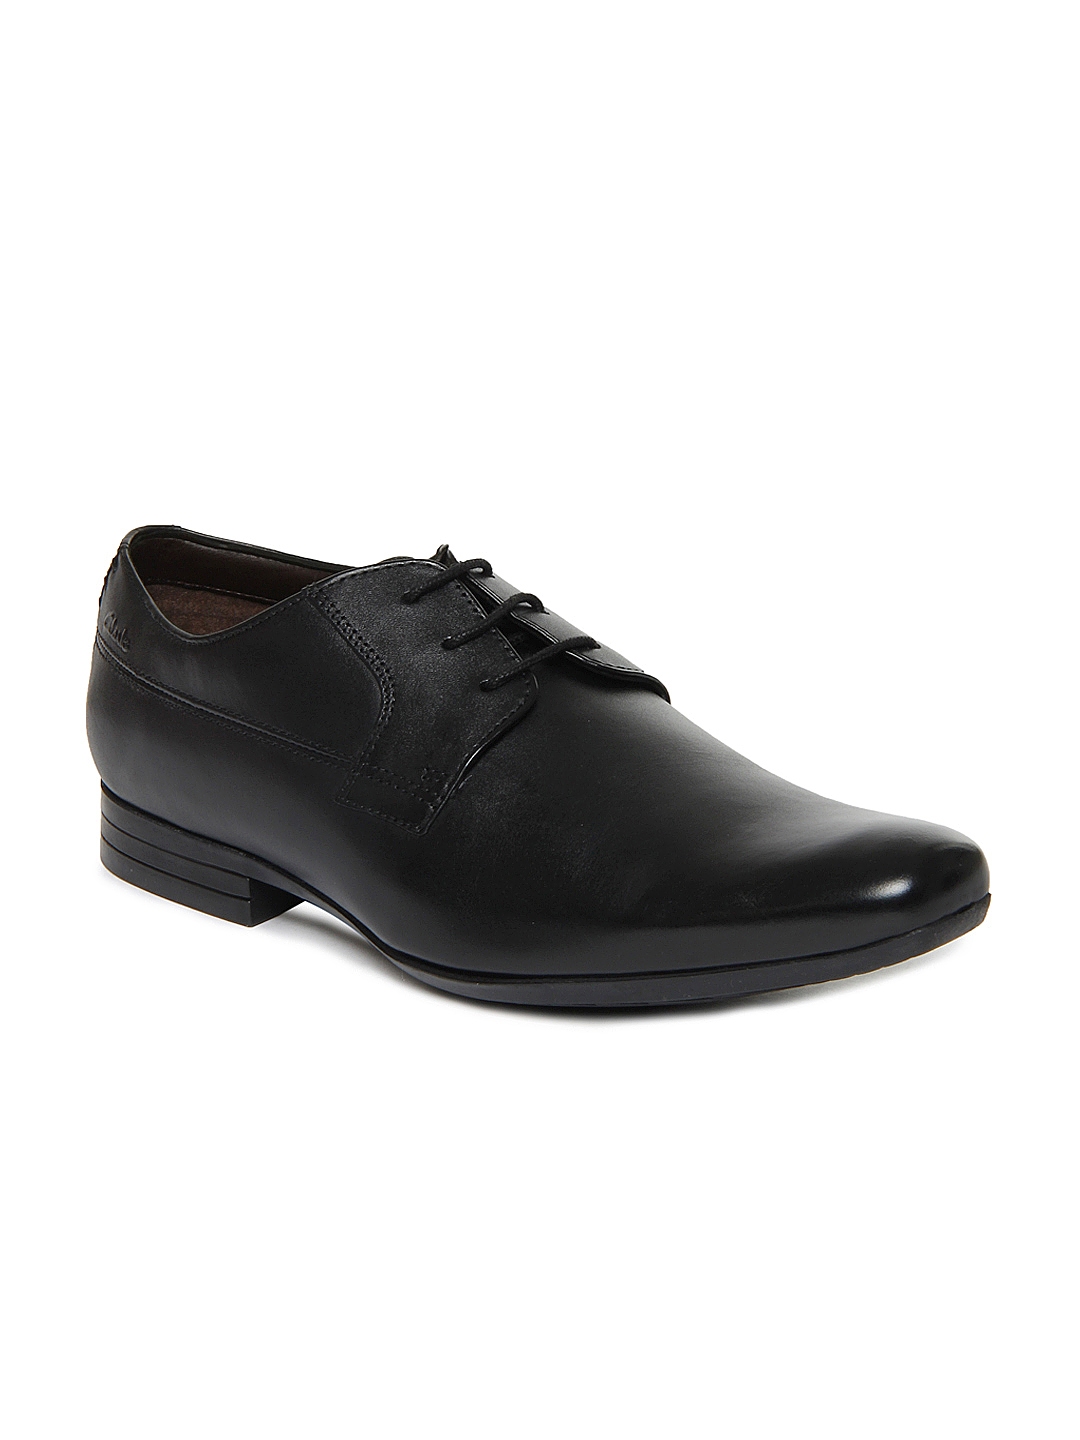 Buy Clarks Men Black Grant Walk Leather Formal Shoes - Formal Shoes for ...